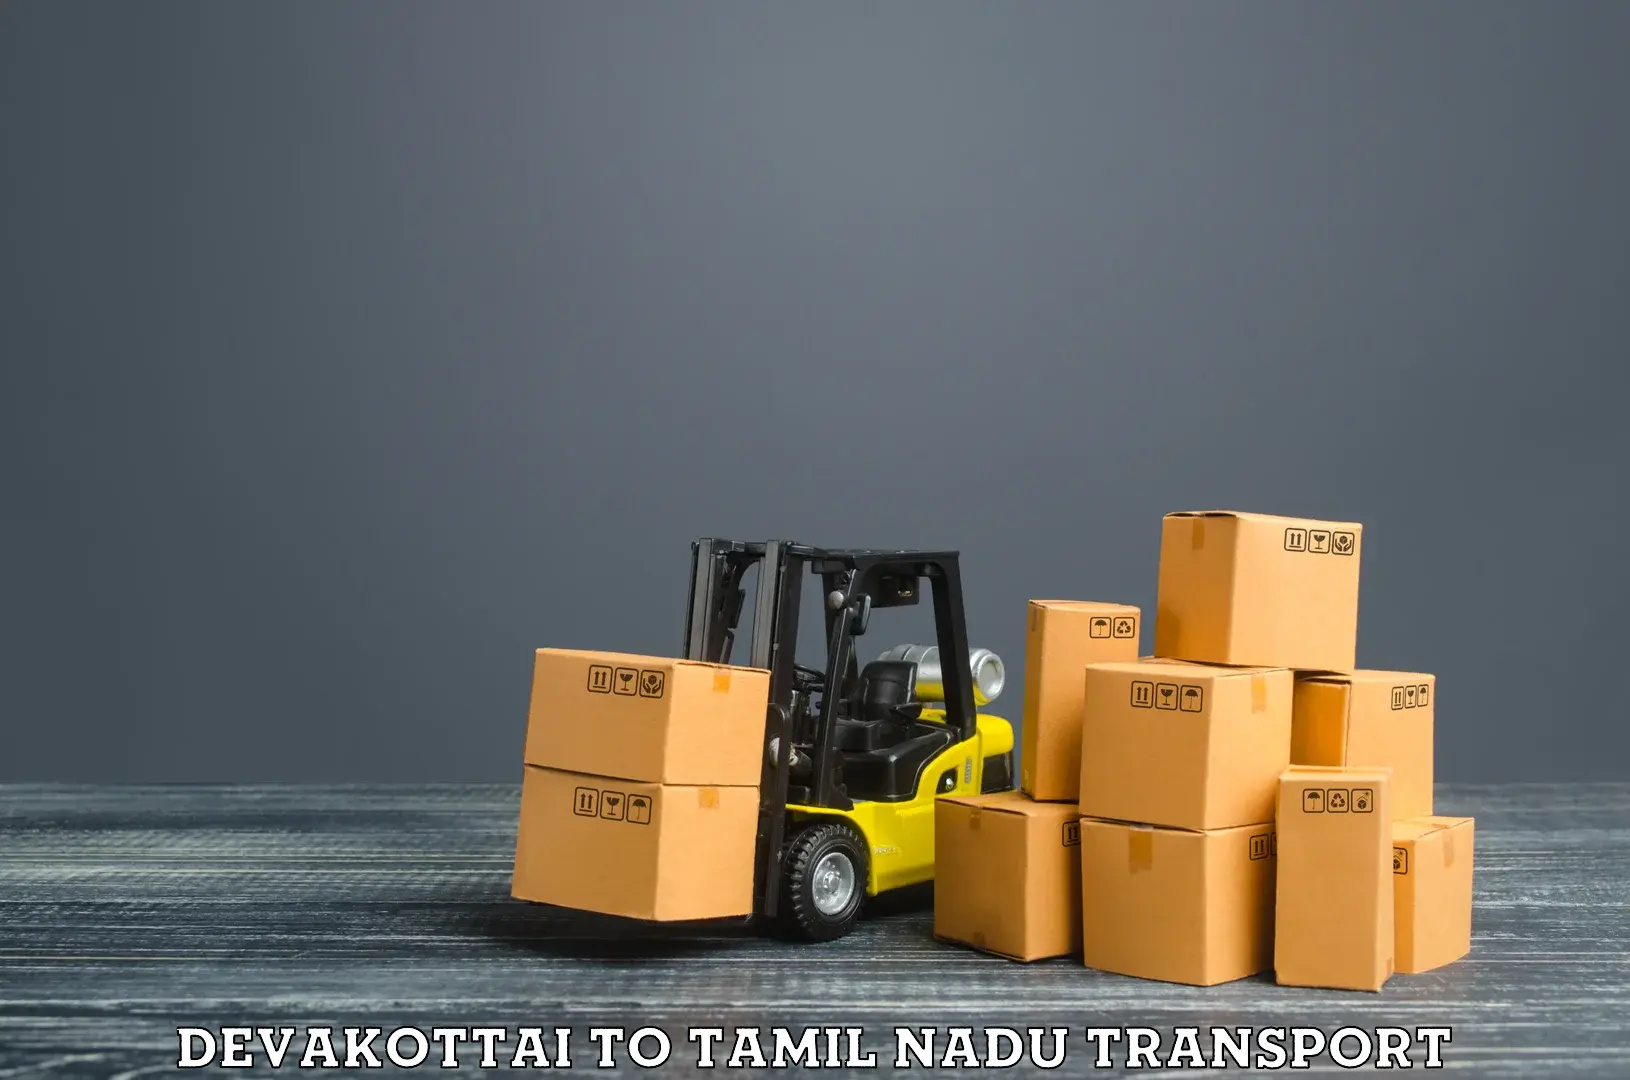 Delivery service Devakottai to Tiruchengode